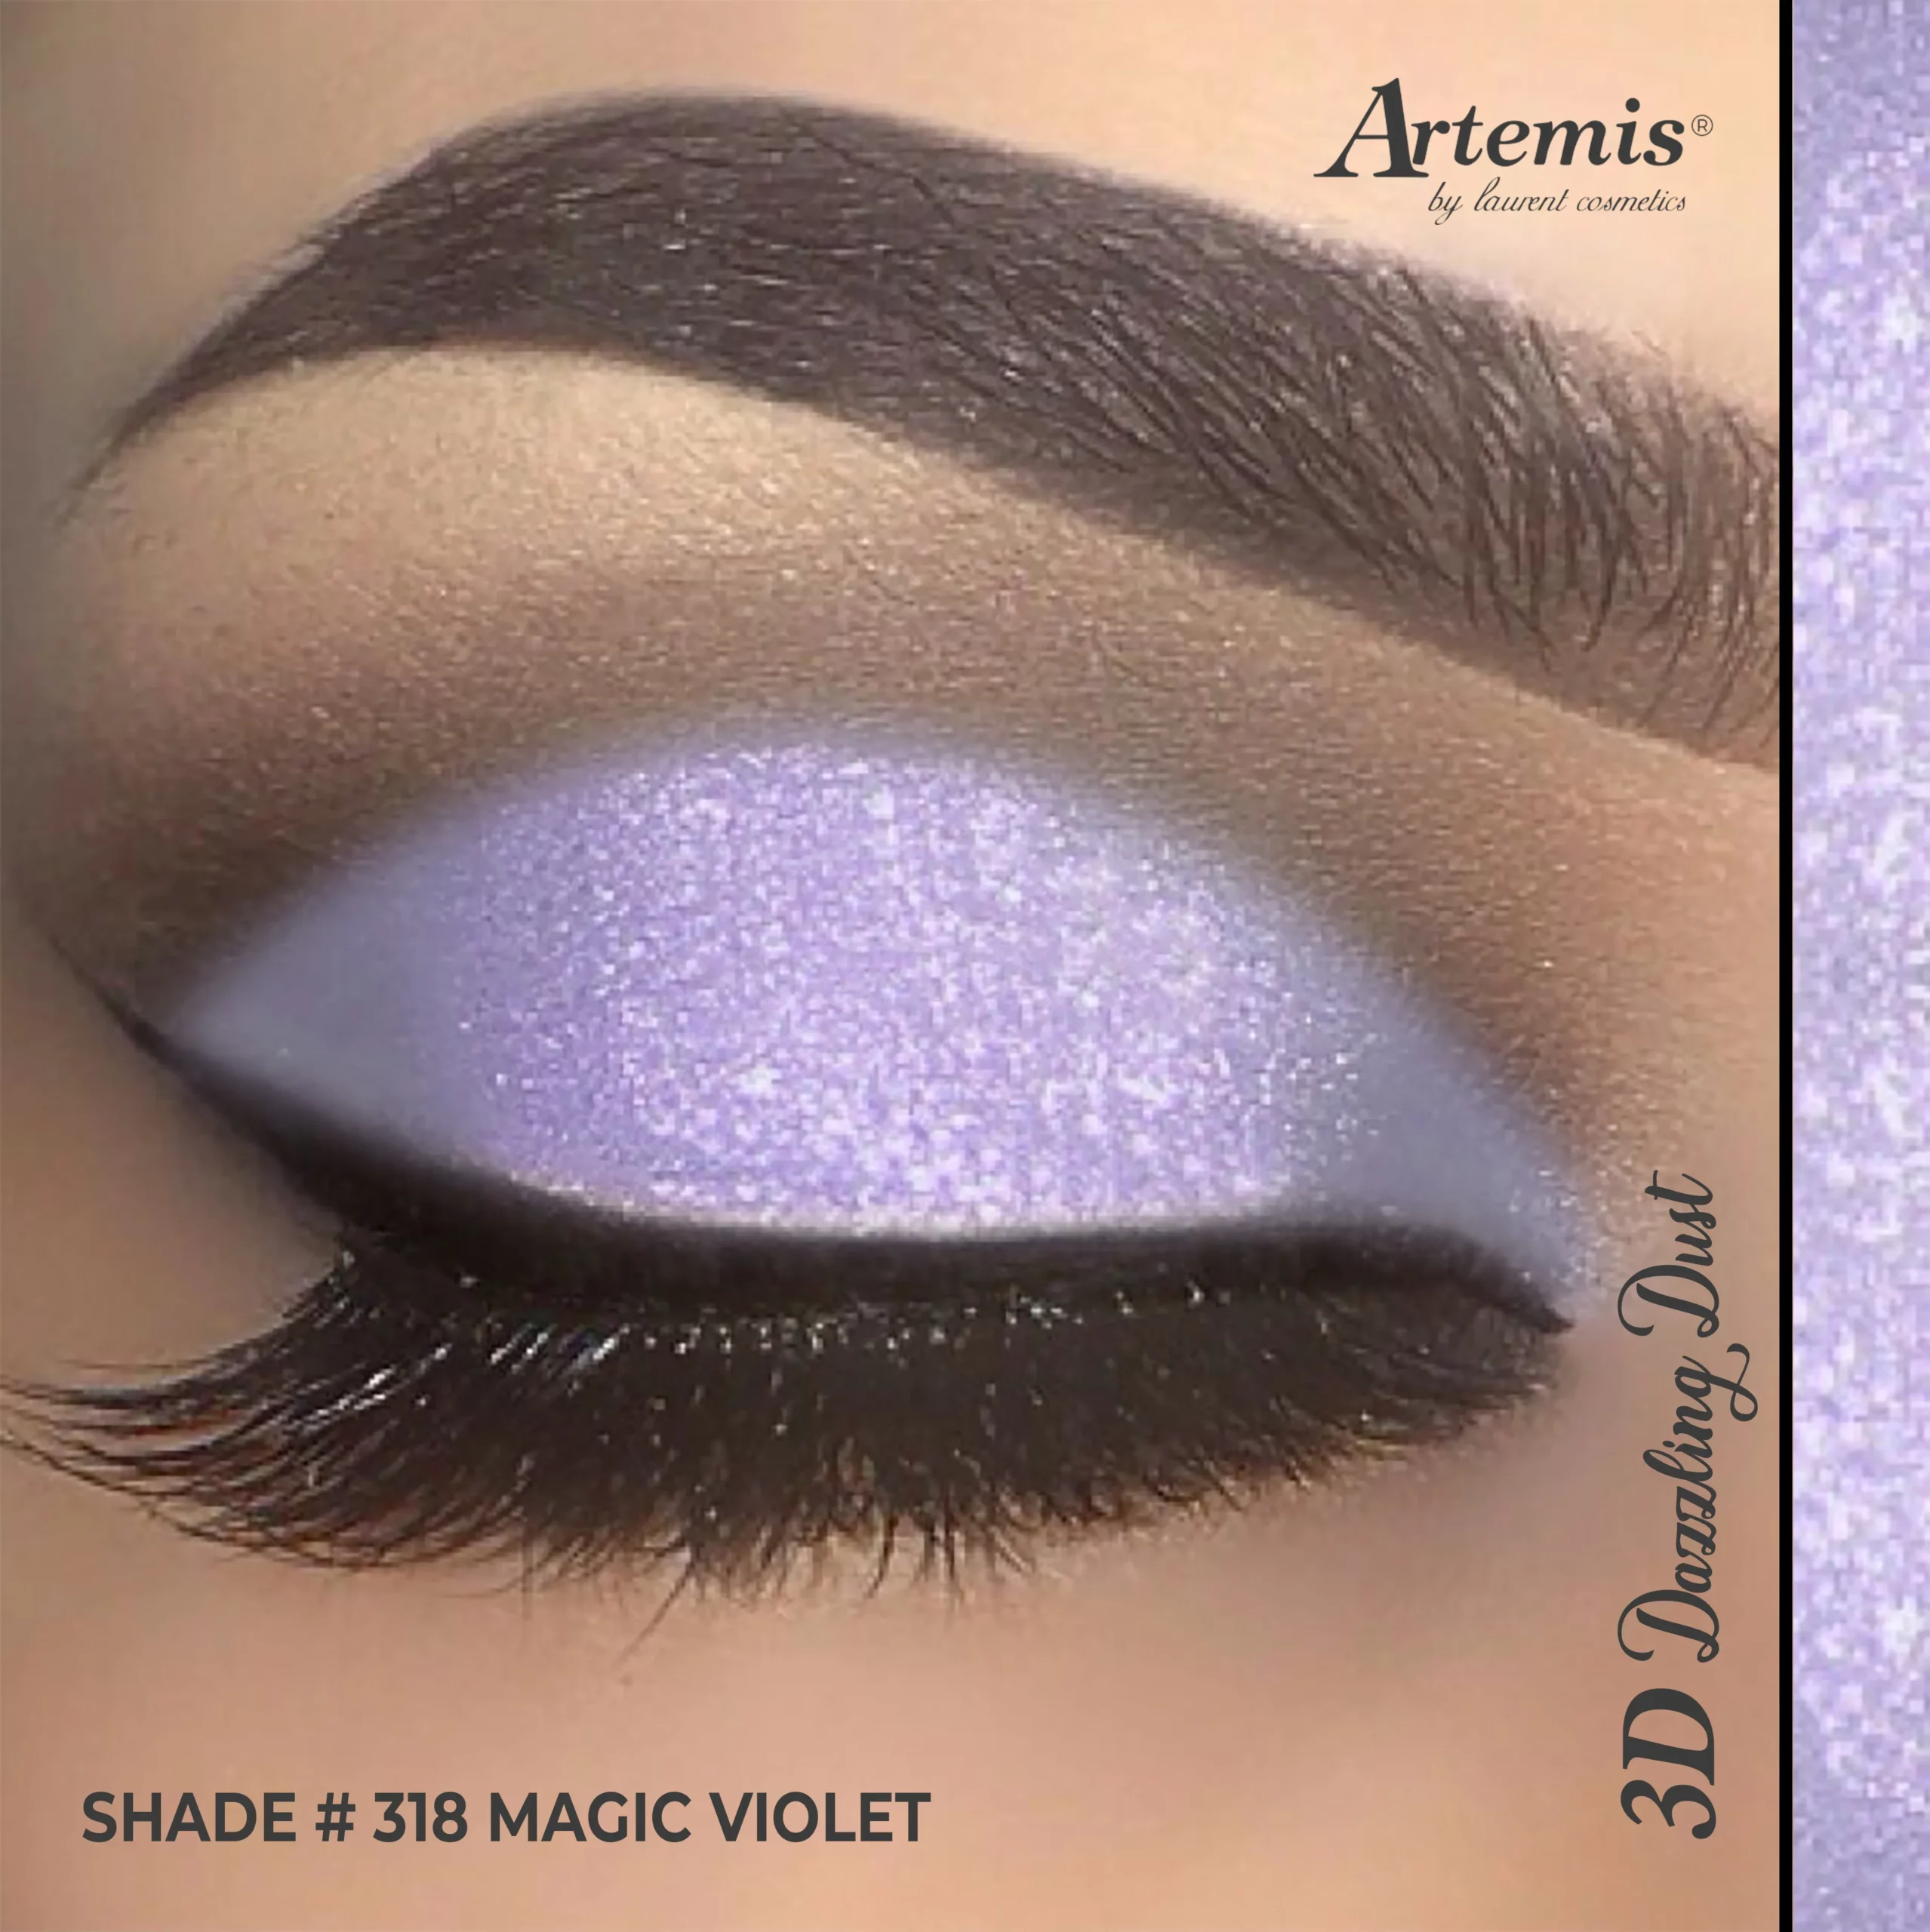 Artemis Dazzling Dust 318 Magic Violet